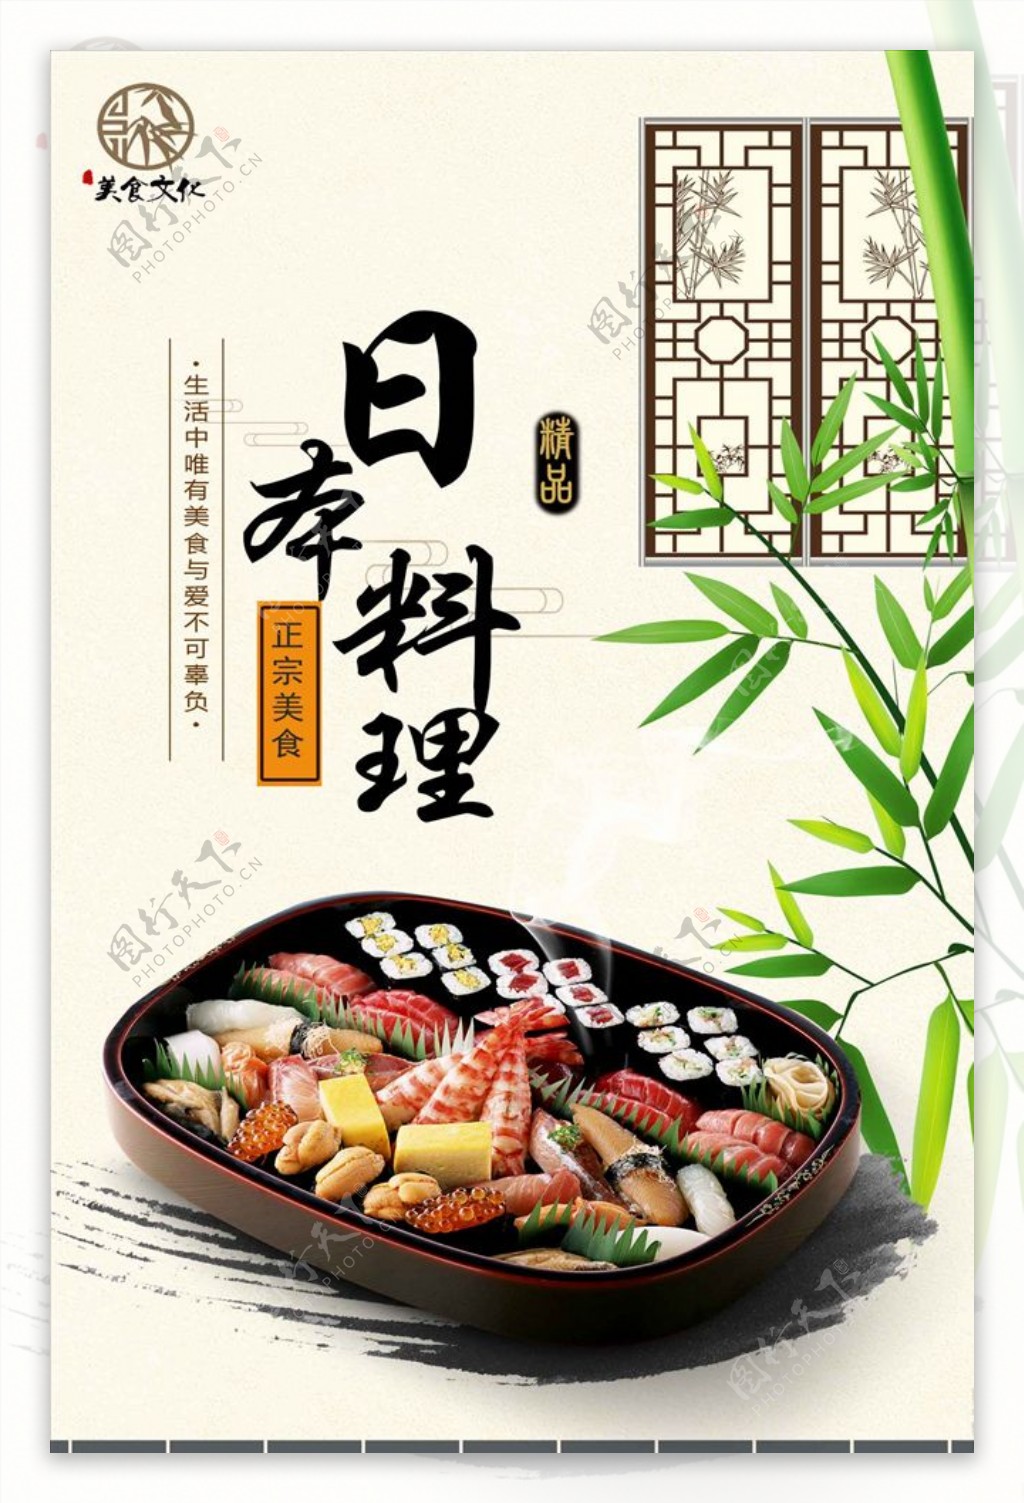 日本料理高端海报设计